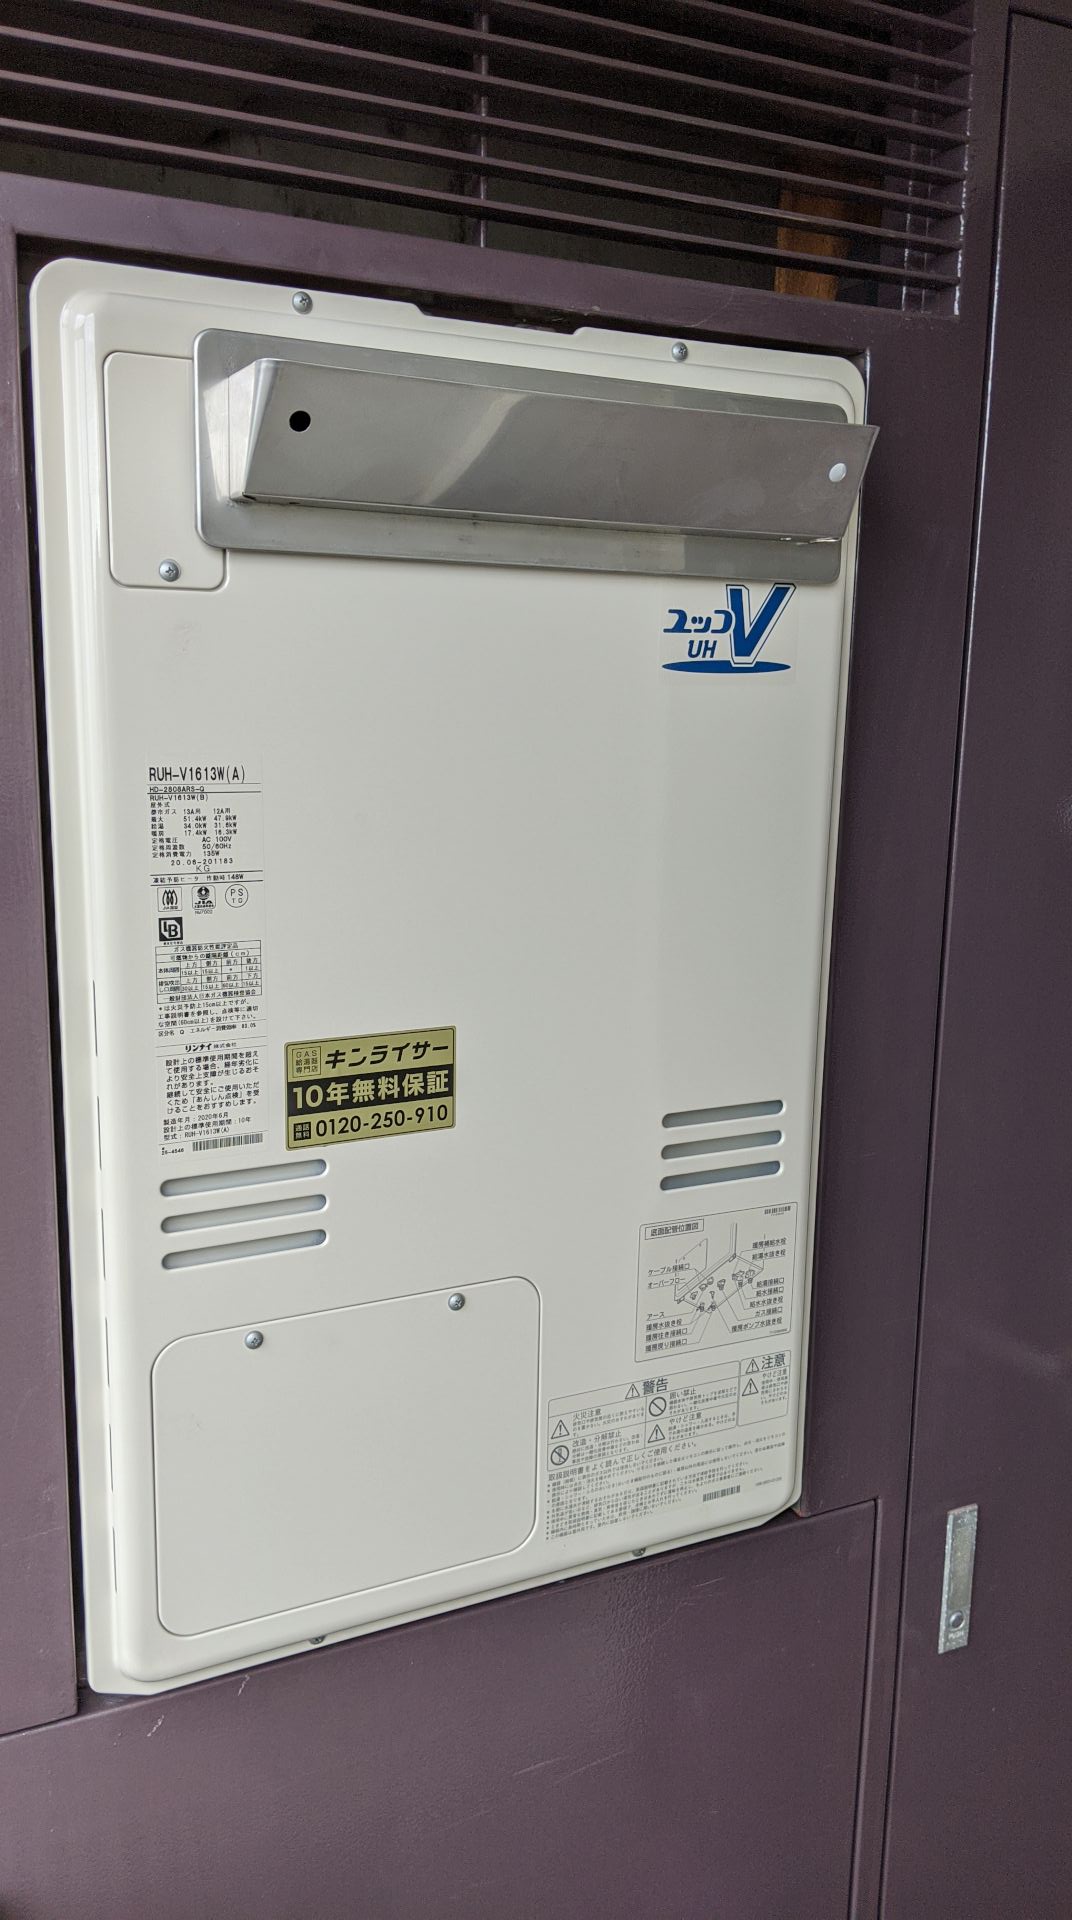 埼玉県さいたま市中央区 Ｙ様 都市ガス リンナイ給湯器 RUH-V1613W(A) 16号給湯暖房給湯器 交換工事 交換後